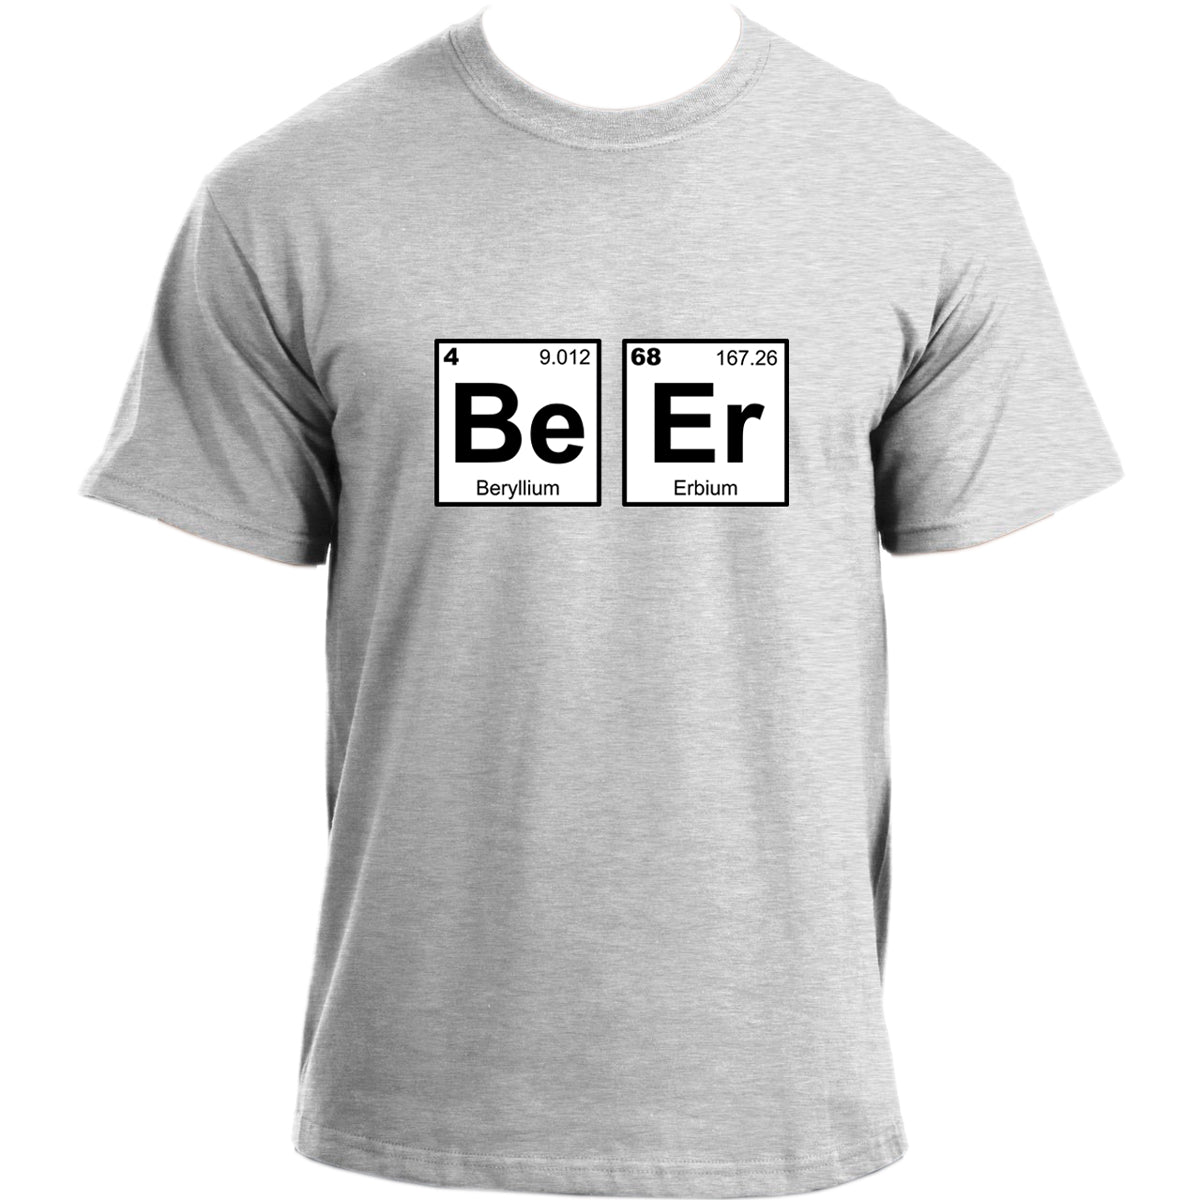 Beryllium Erbium Beer T Shirt I Beer Design College Party Nerd Geek Science Chemisty T-Shirt